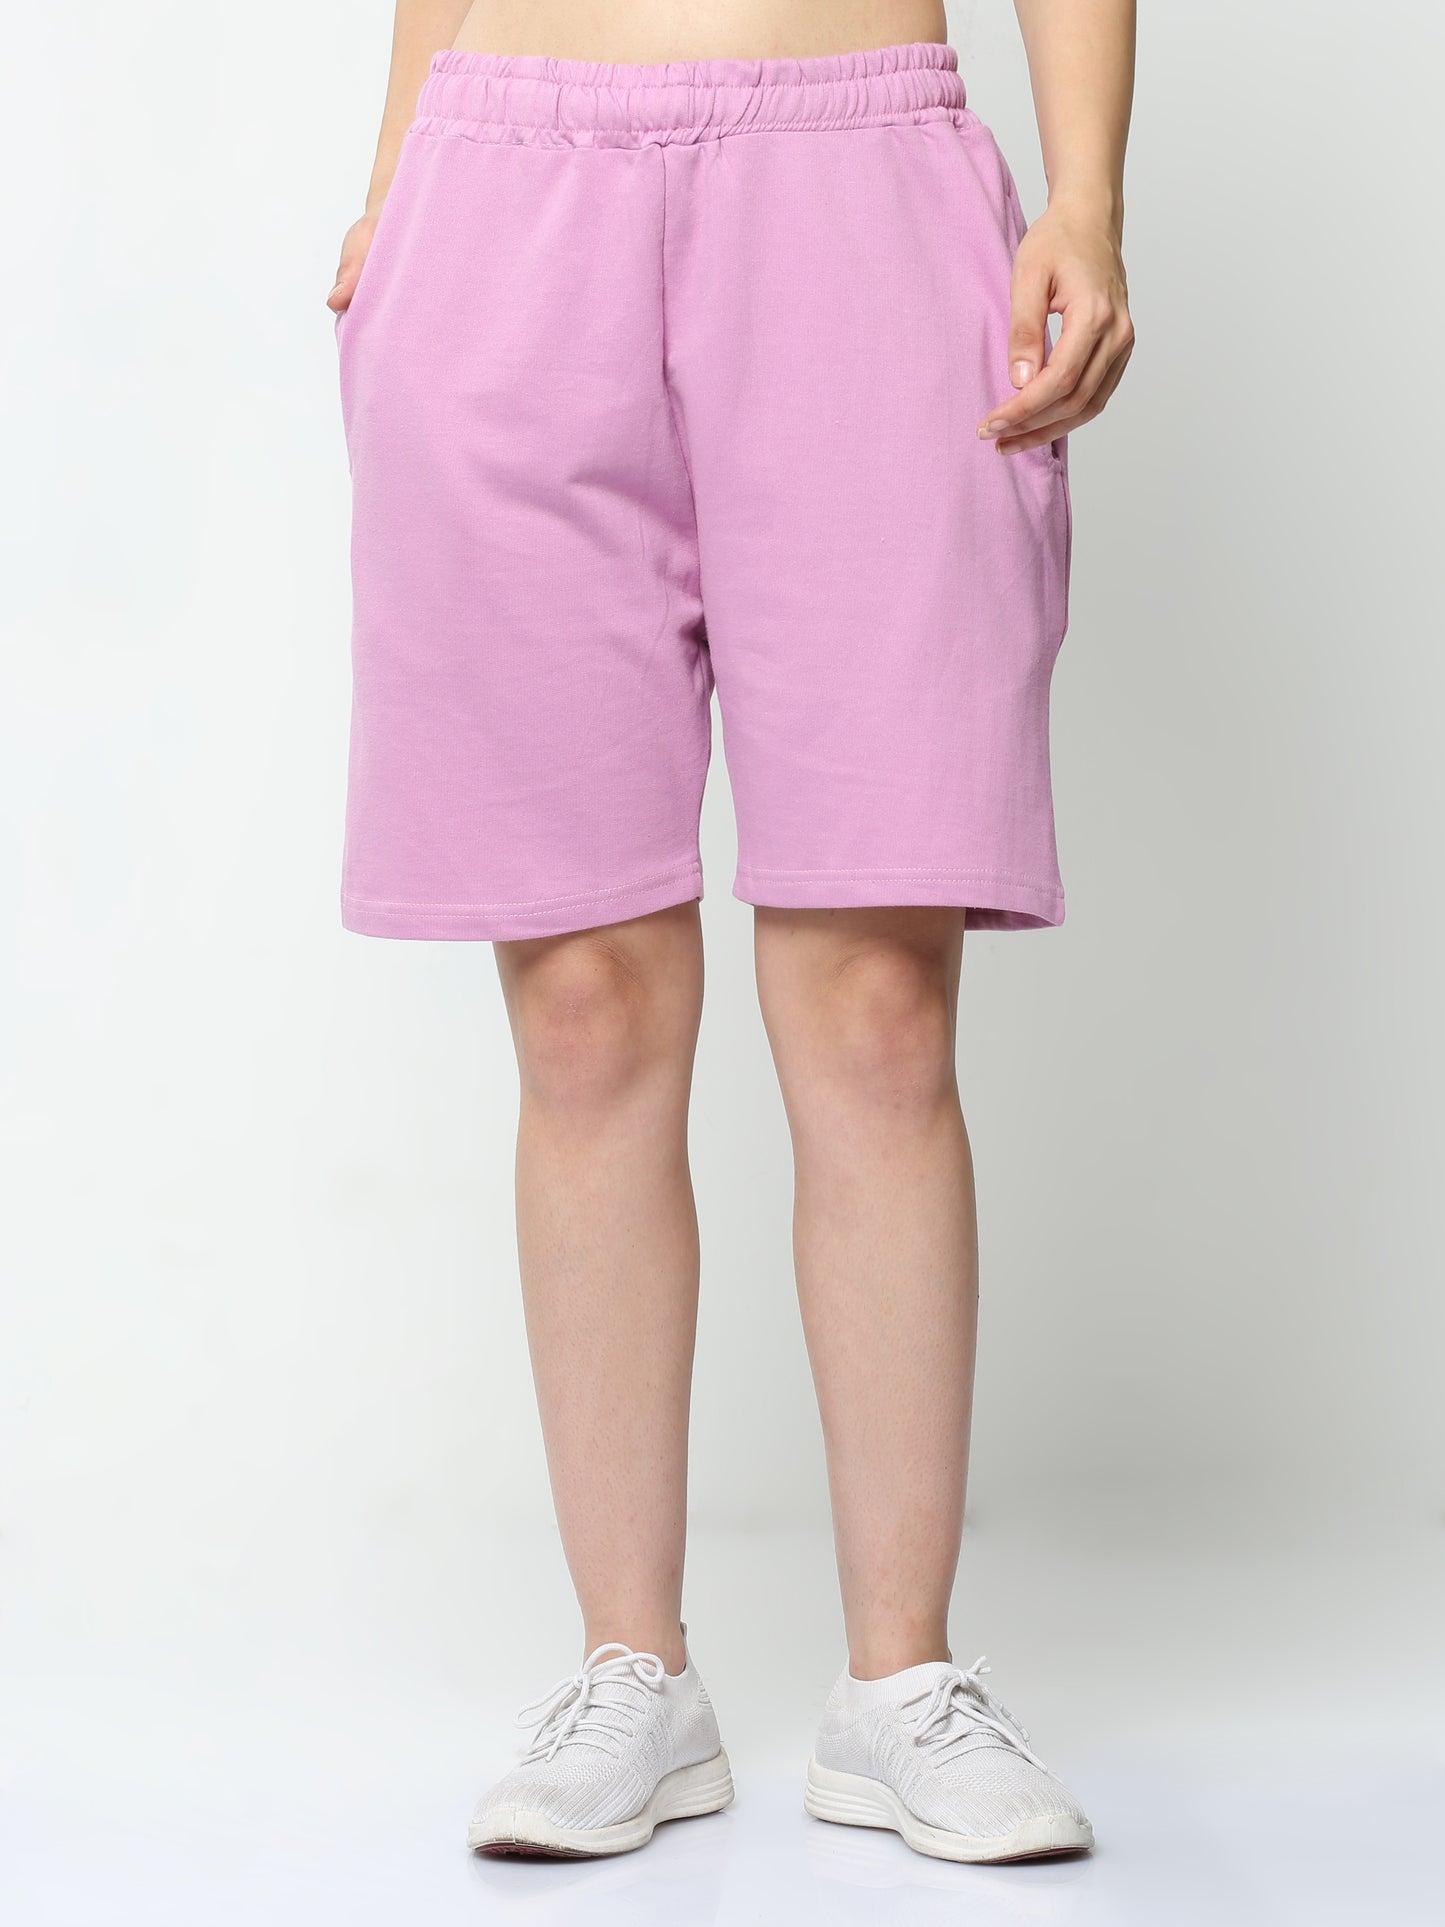 Lavender Solid Premium Unisex Shorts